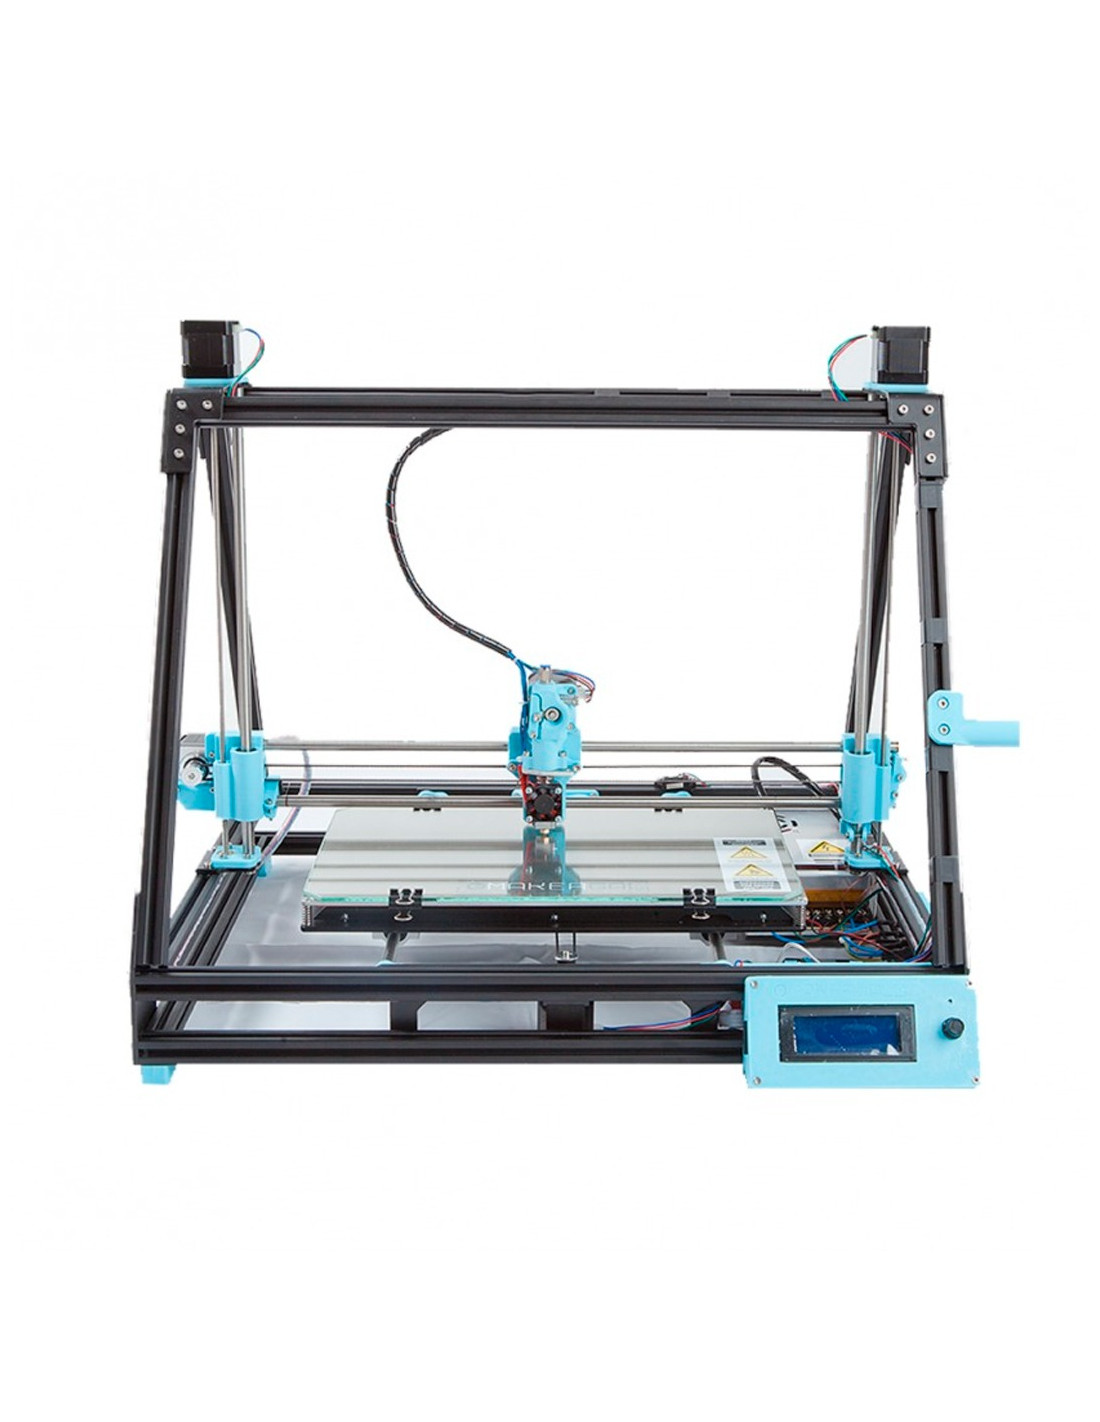 Impressora 3D Mendel Max XL V5